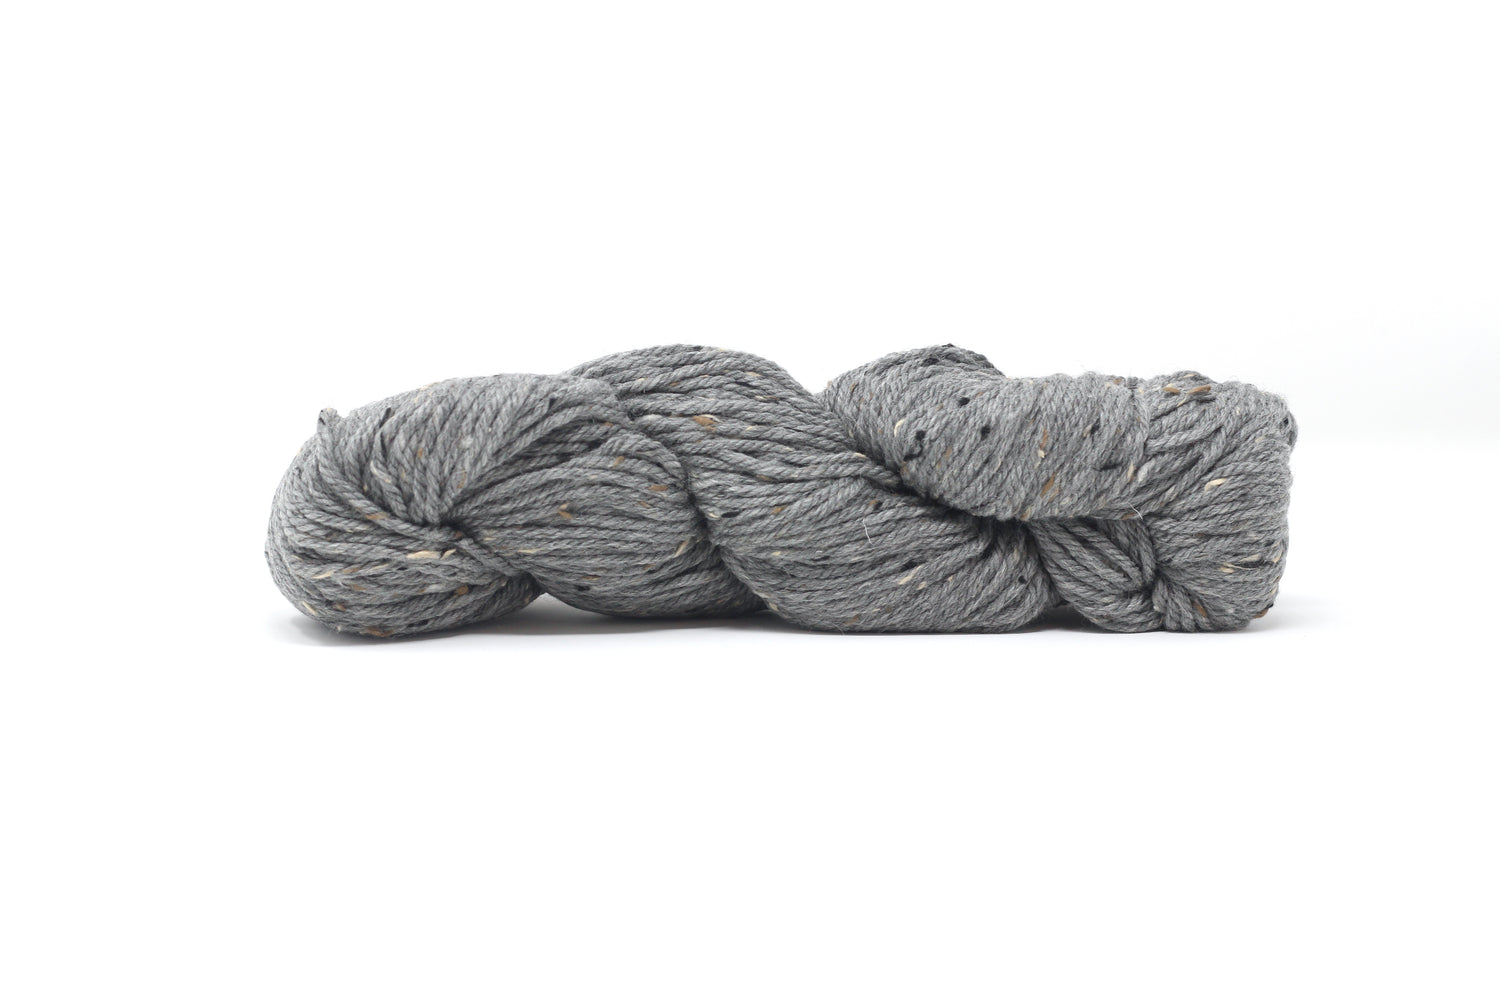 Blue Sky Fibers Woolstok Tweed (Aran) Yarn - 3312 Sage Rose at Jimmy Beans  Wool